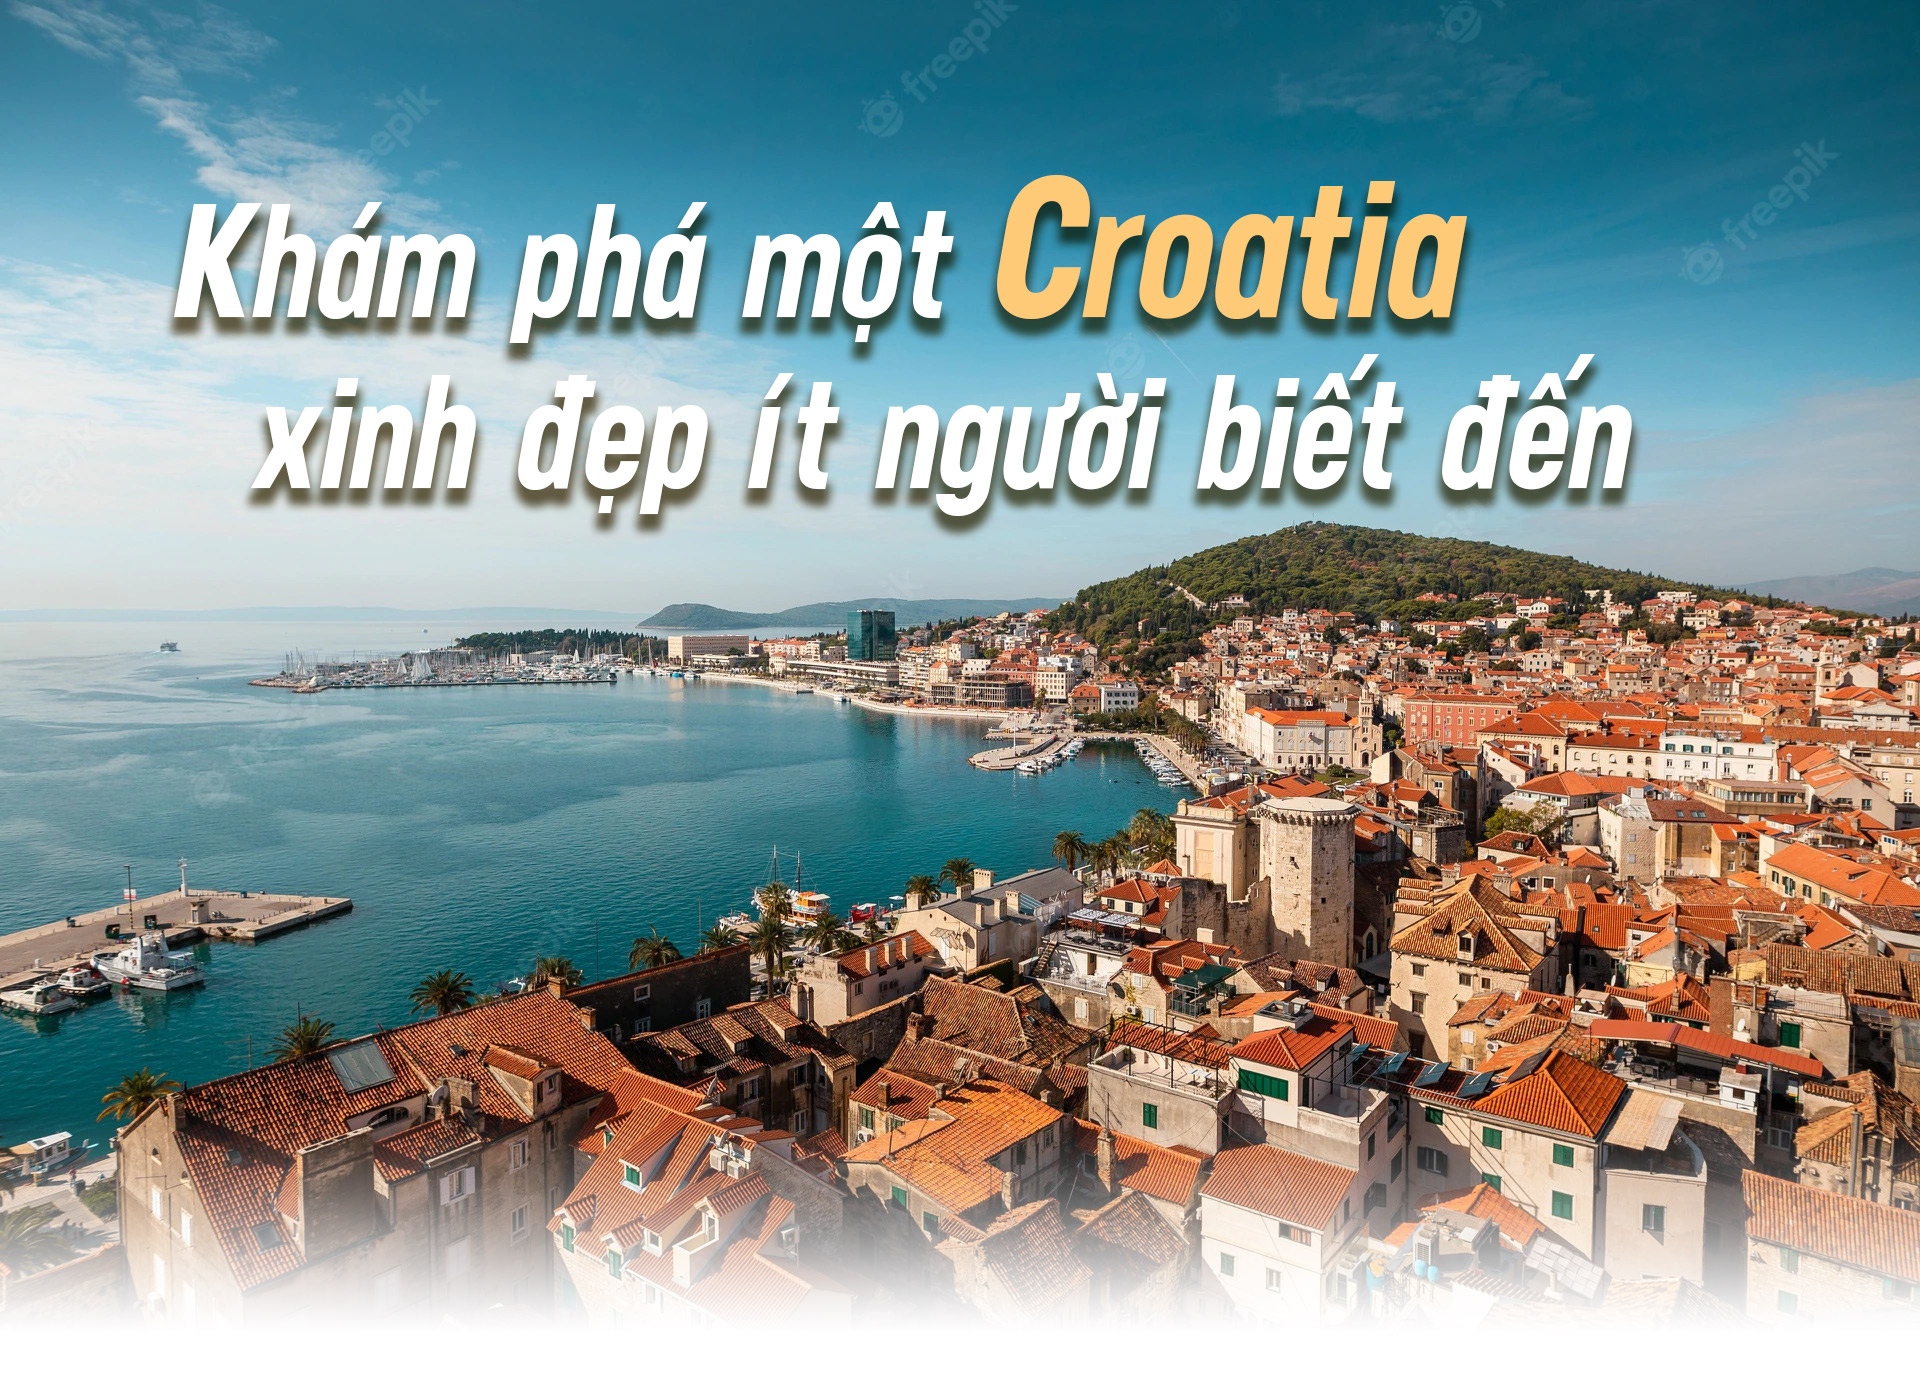 Khám phá một Croatia xinh đẹp ít người biết đến - 1